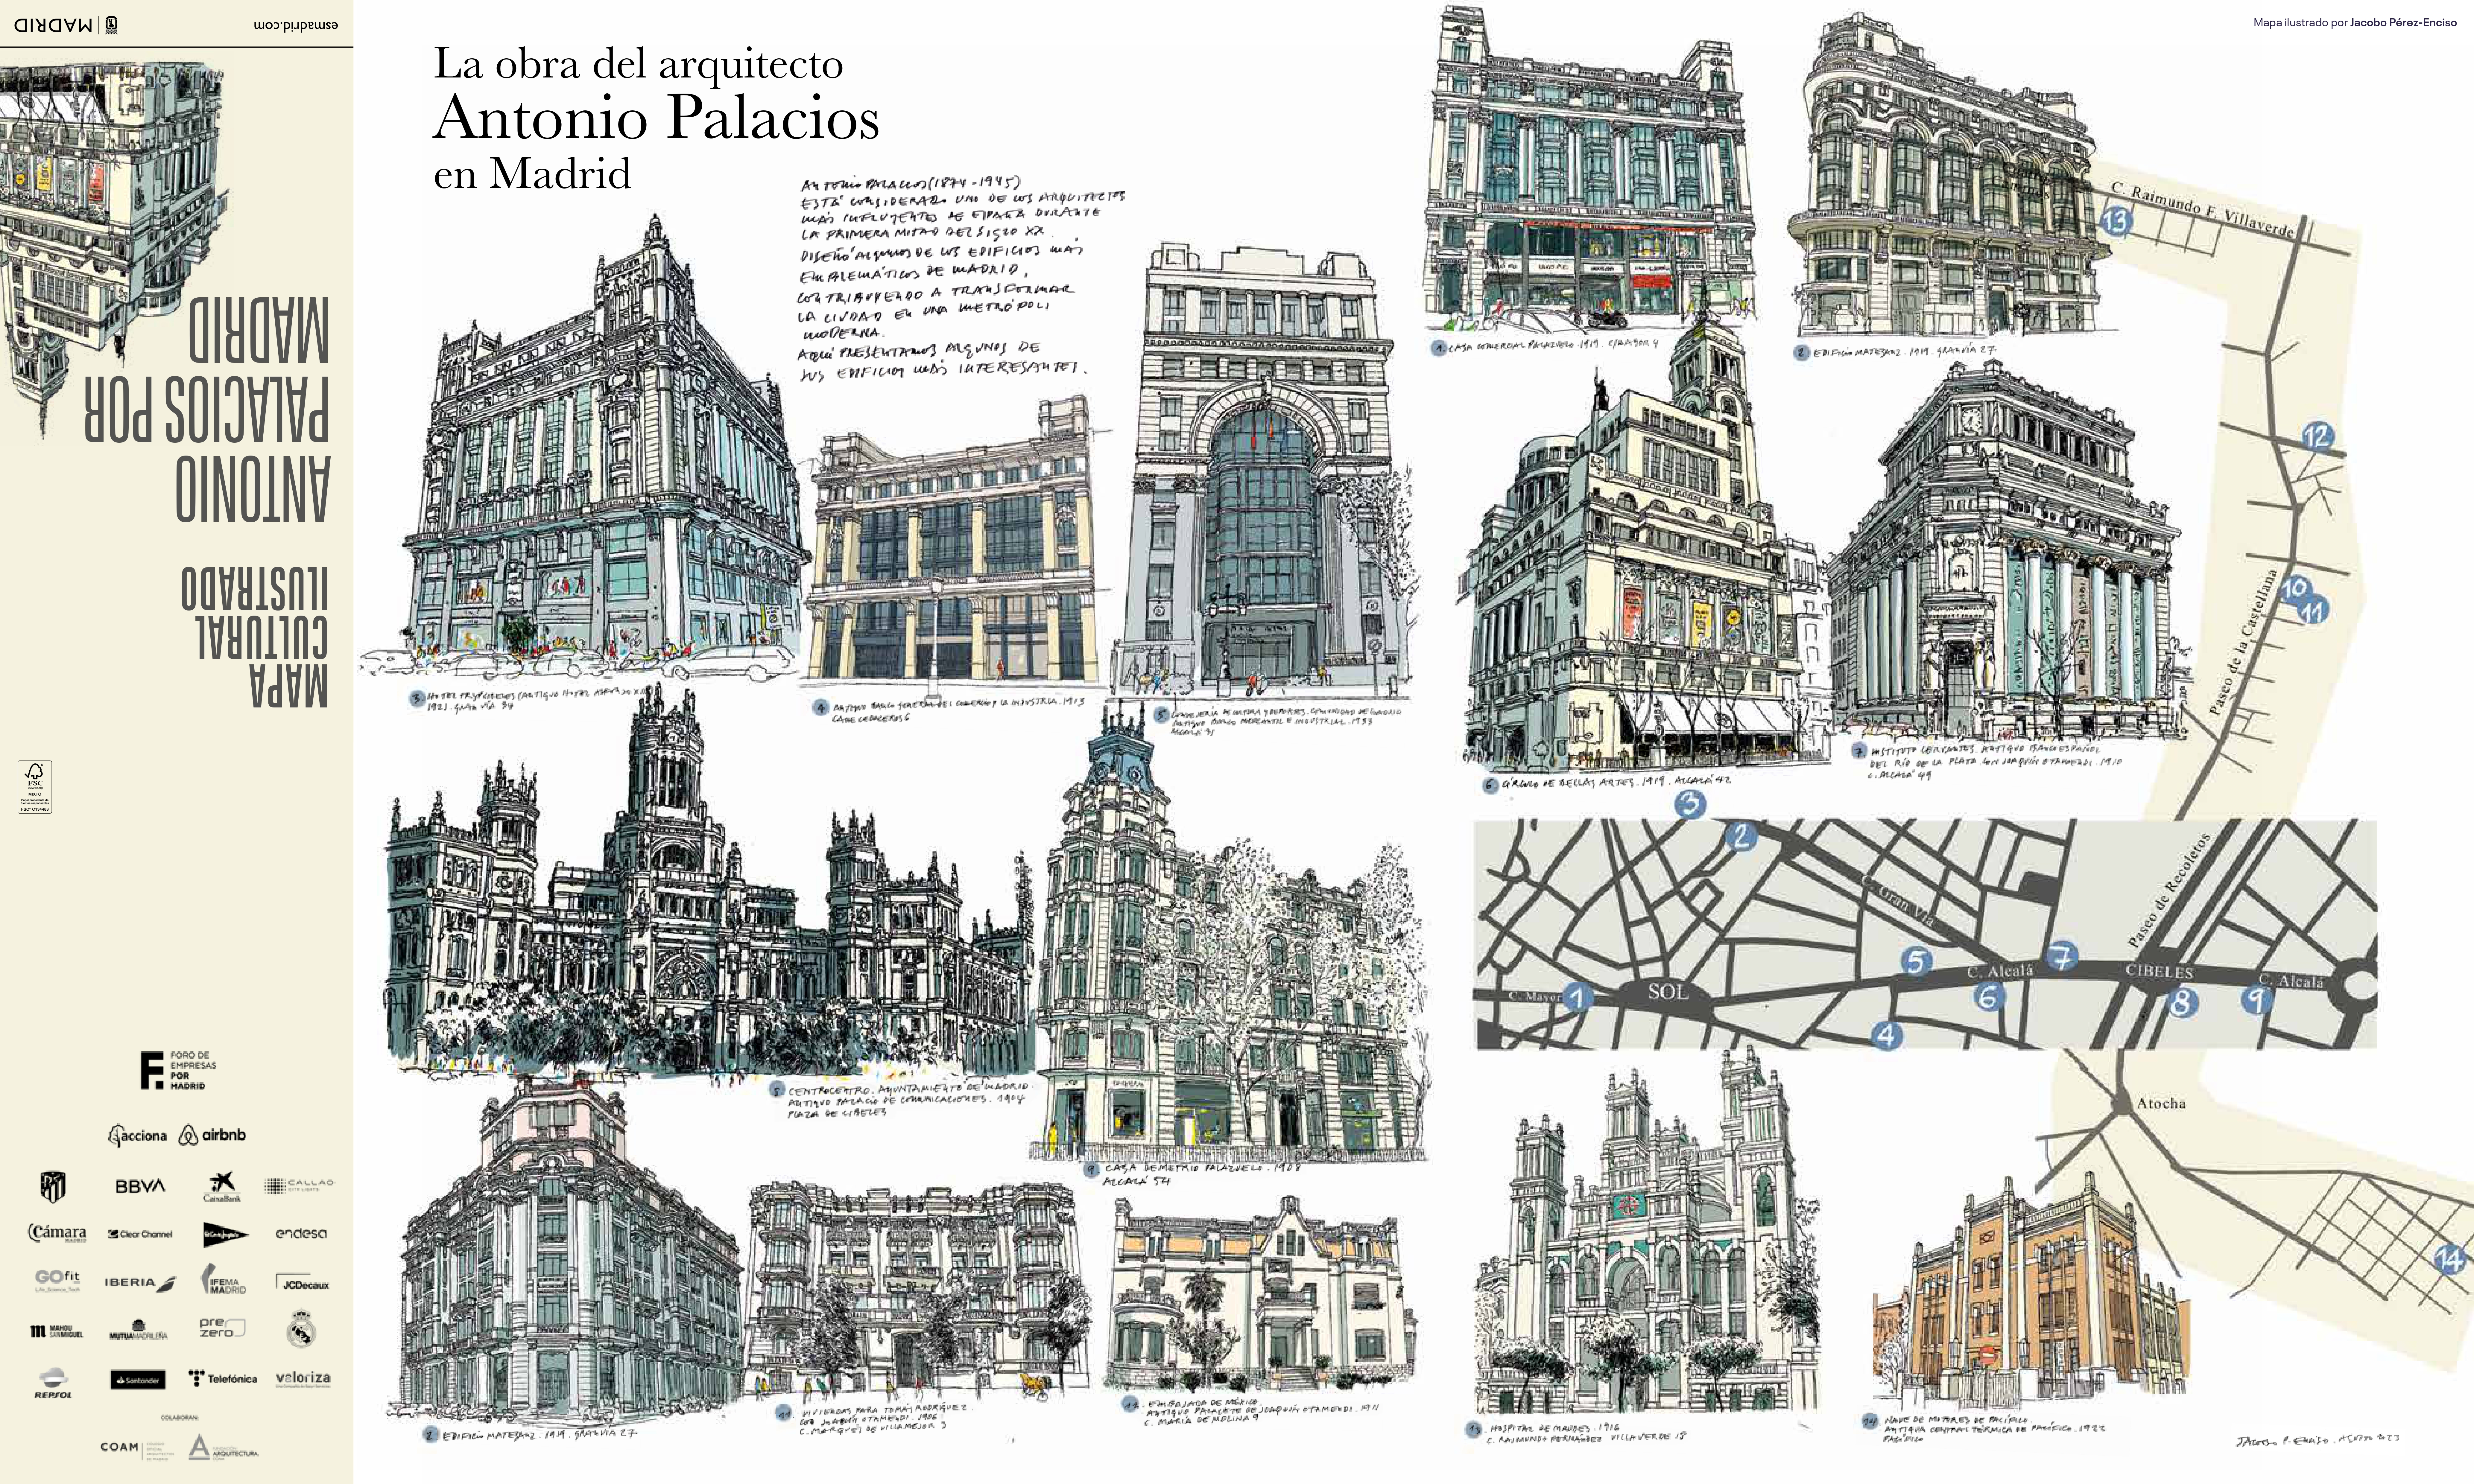 Imagen del nuevo Mapa ilustrado de Antonio Palacios creado por el ayuntamiento de Madrid.